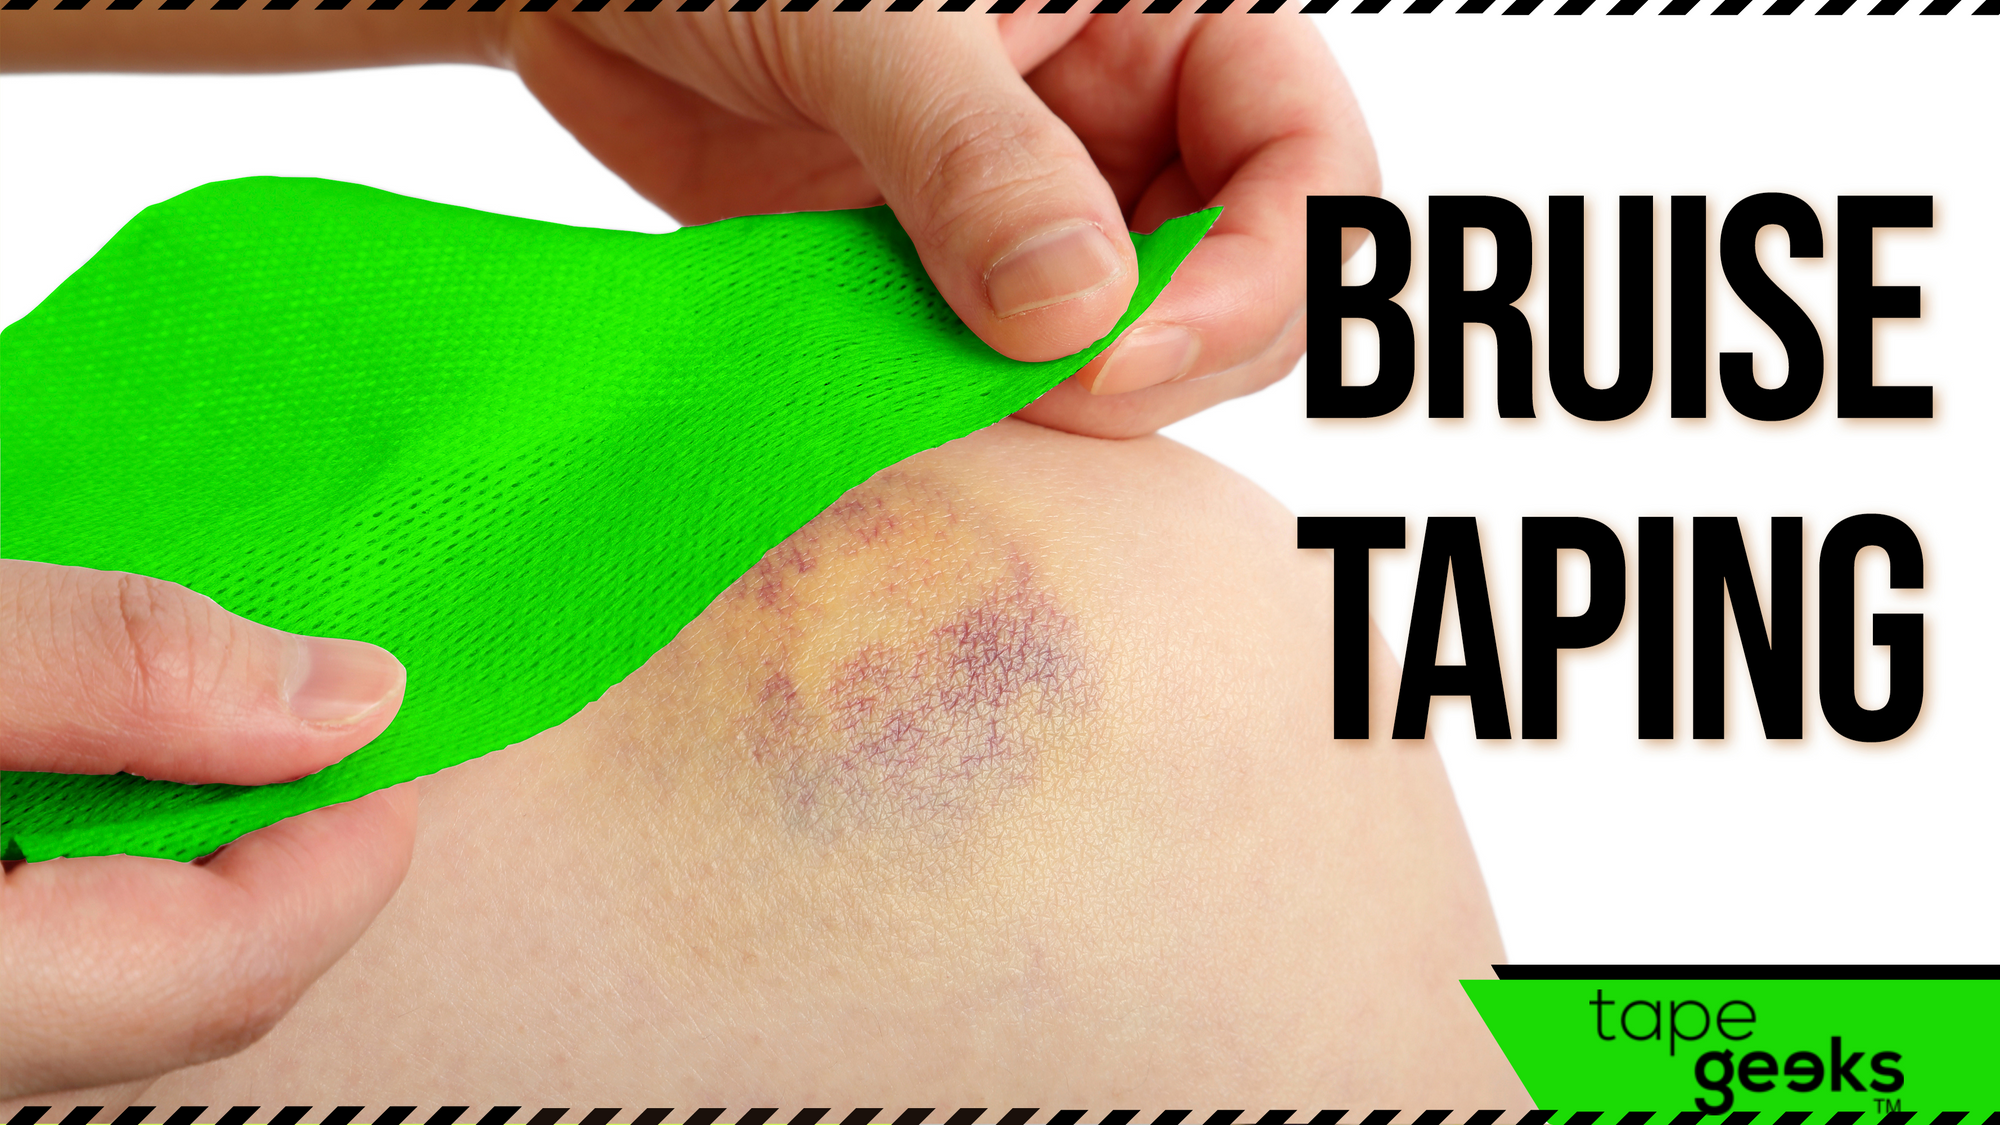 Bruise taping